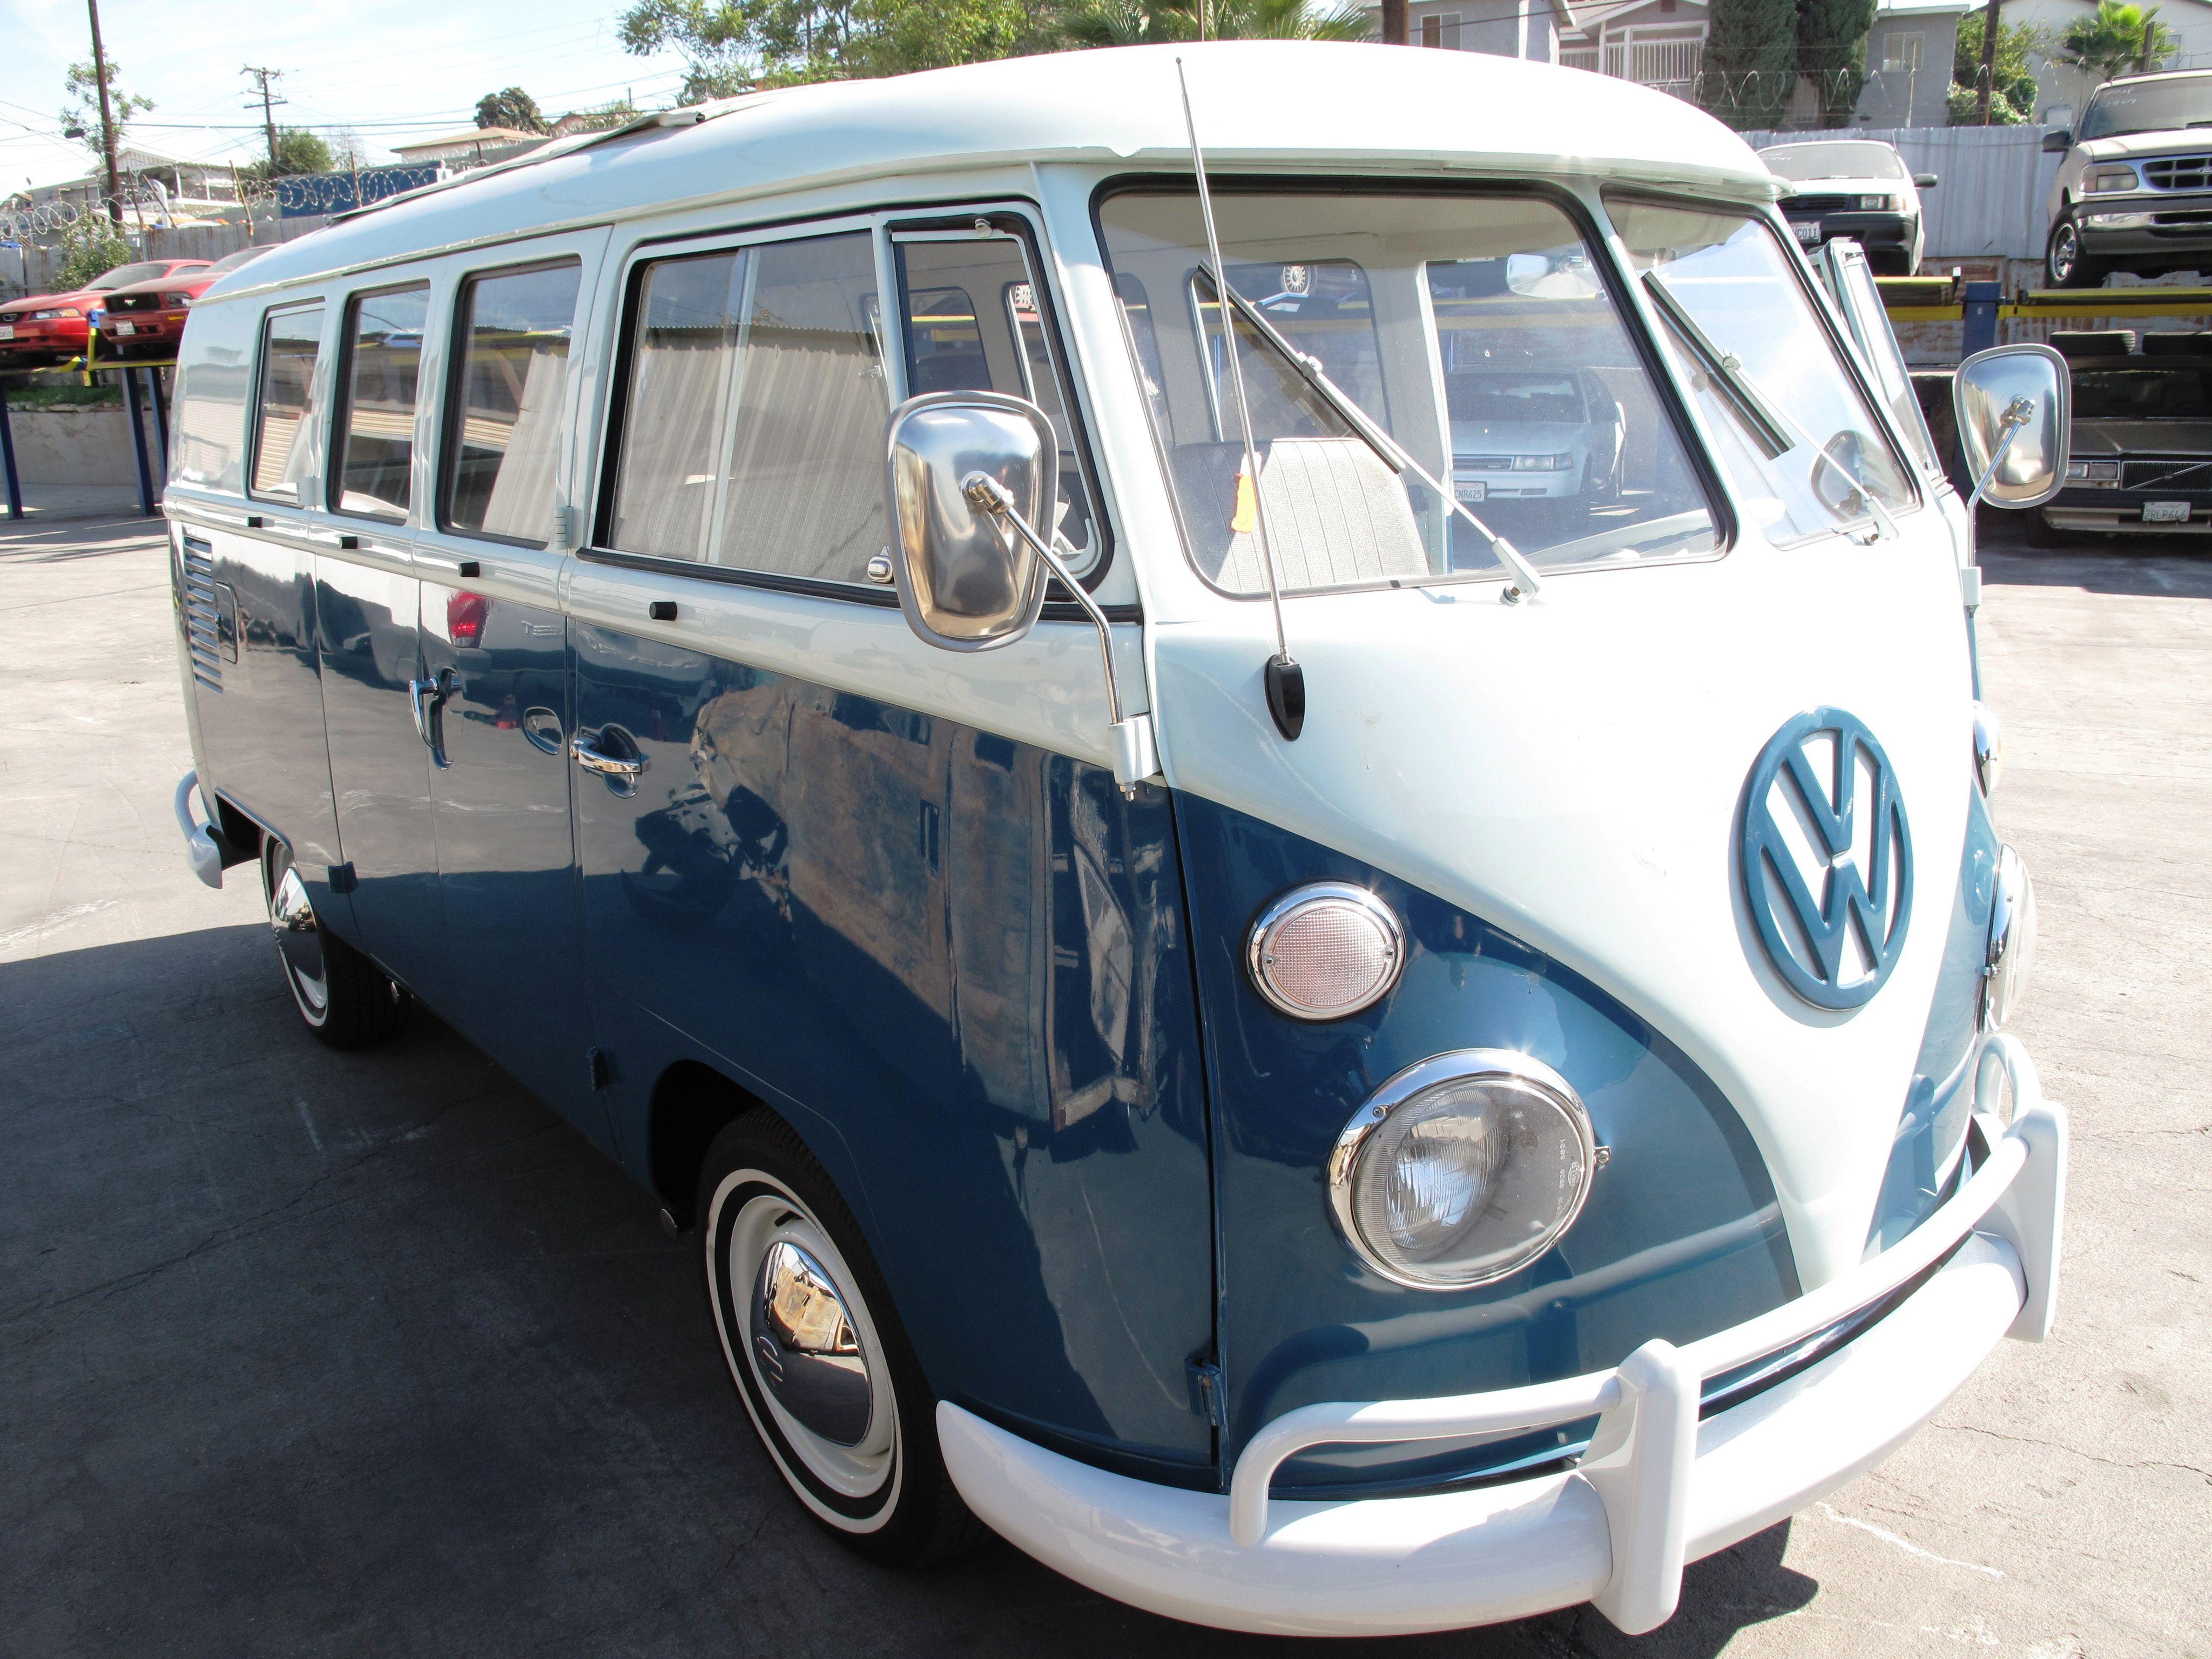 Reinig de vloer Nationaal bezig Long, strange trip ending for iconic Volkswagen hippie van as production to  halt in Brazil